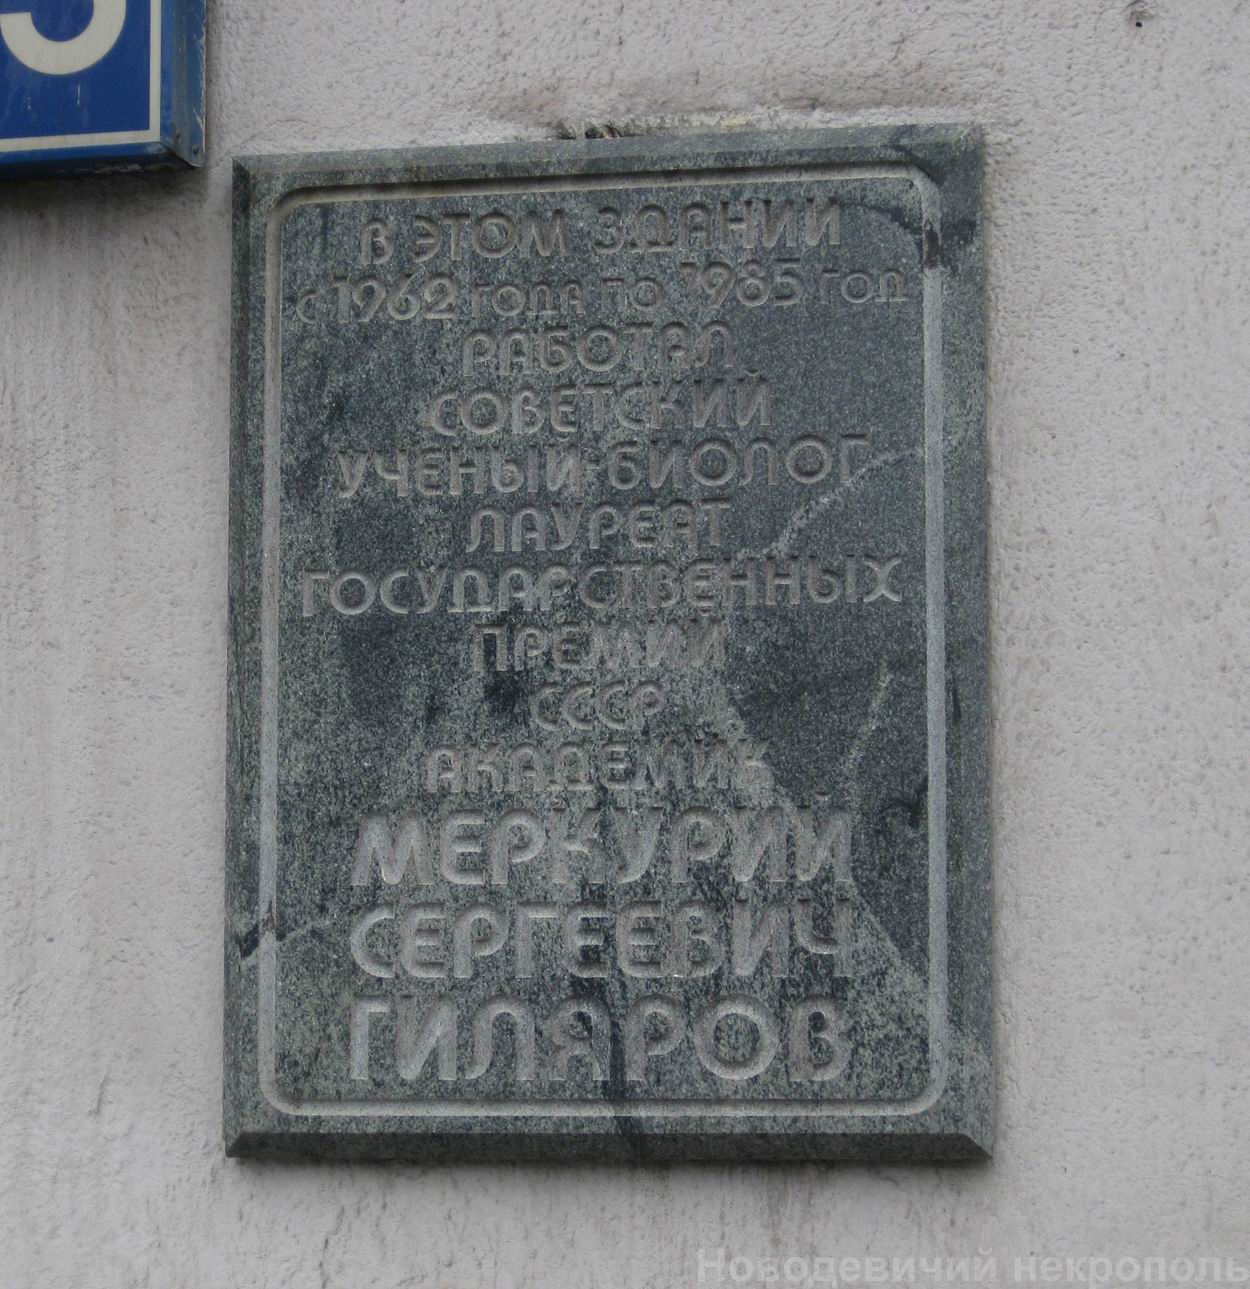 Мемориальная доска Гилярову М.С. (1912–1985), арх. А.С.Цивьян, на Ленинском проспекте, дом 33, открыта 15.4.1988.